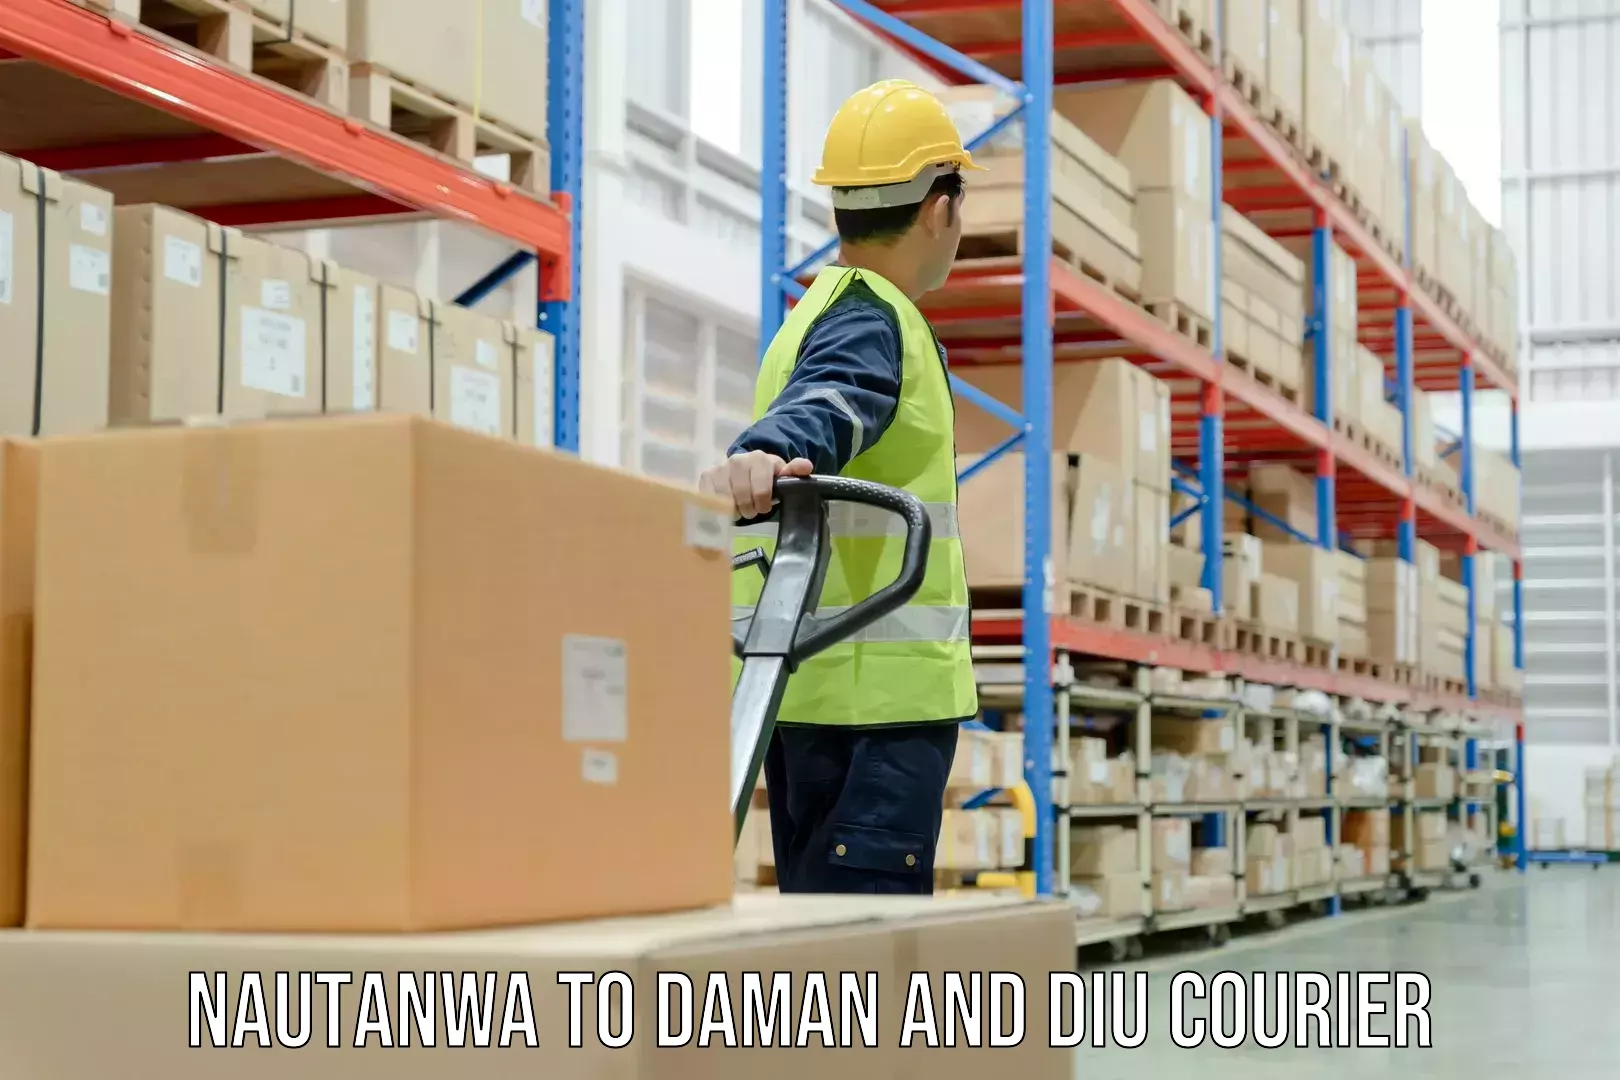 Express courier facilities Nautanwa to Diu